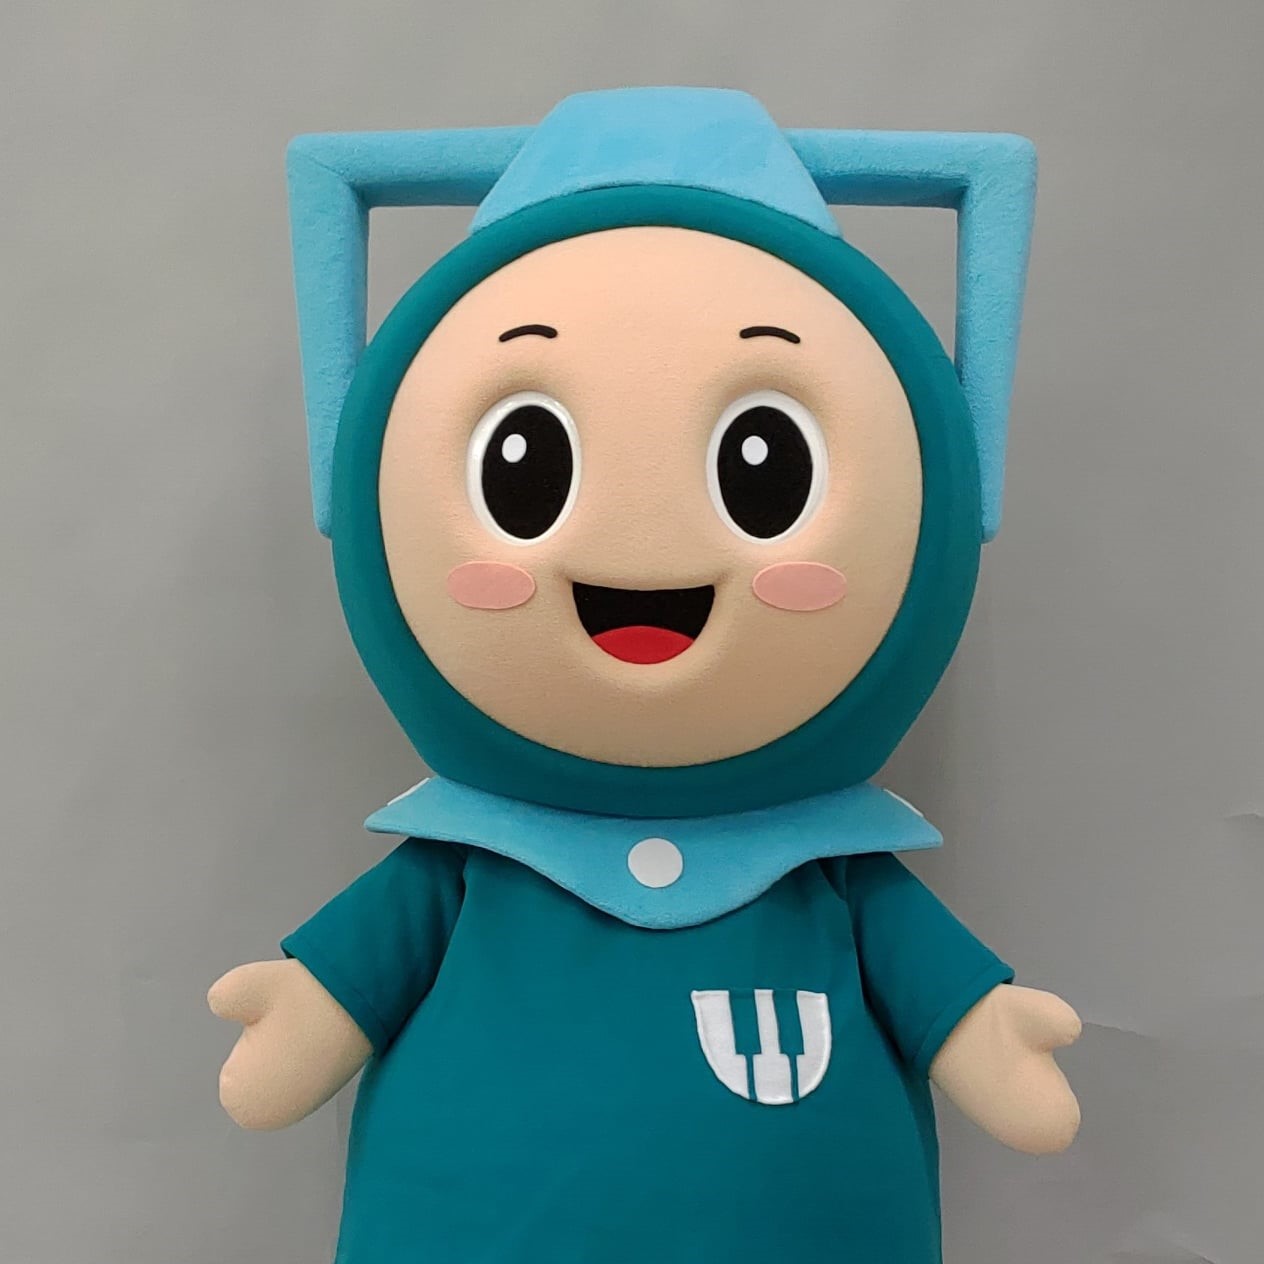 2020 魔人社 中信文教藝仔采妞人偶製作 mascot costume